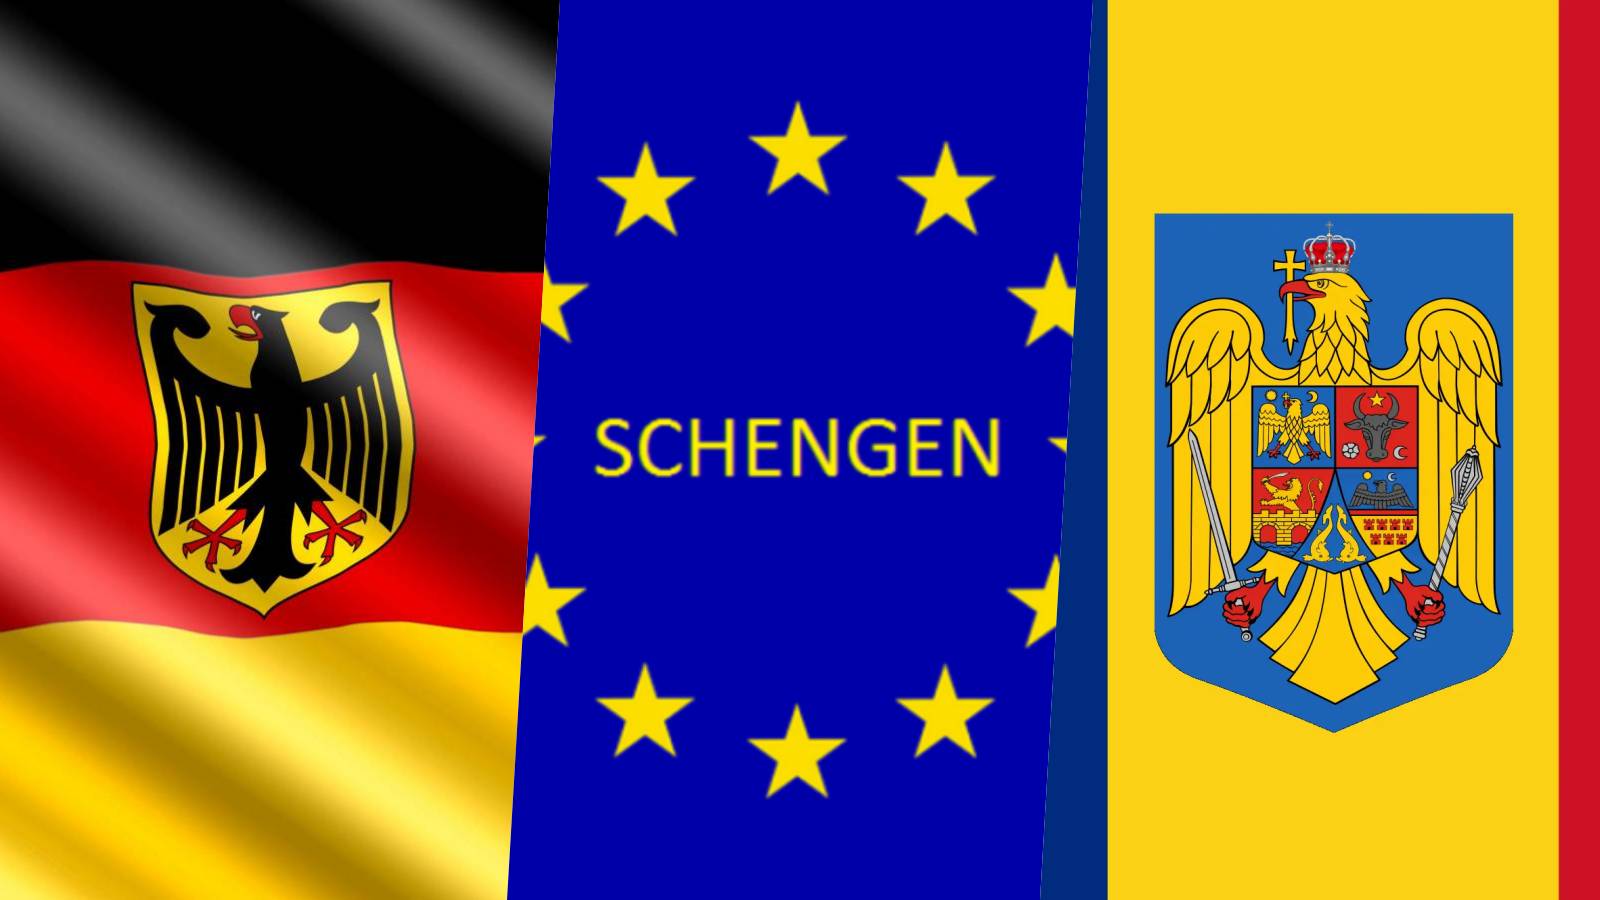 Deutschland ergreift neue offizielle Maßnahmen in letzter Minute nach Berlin, obwohl es den Schengen-Beitritt Rumäniens unterstützt